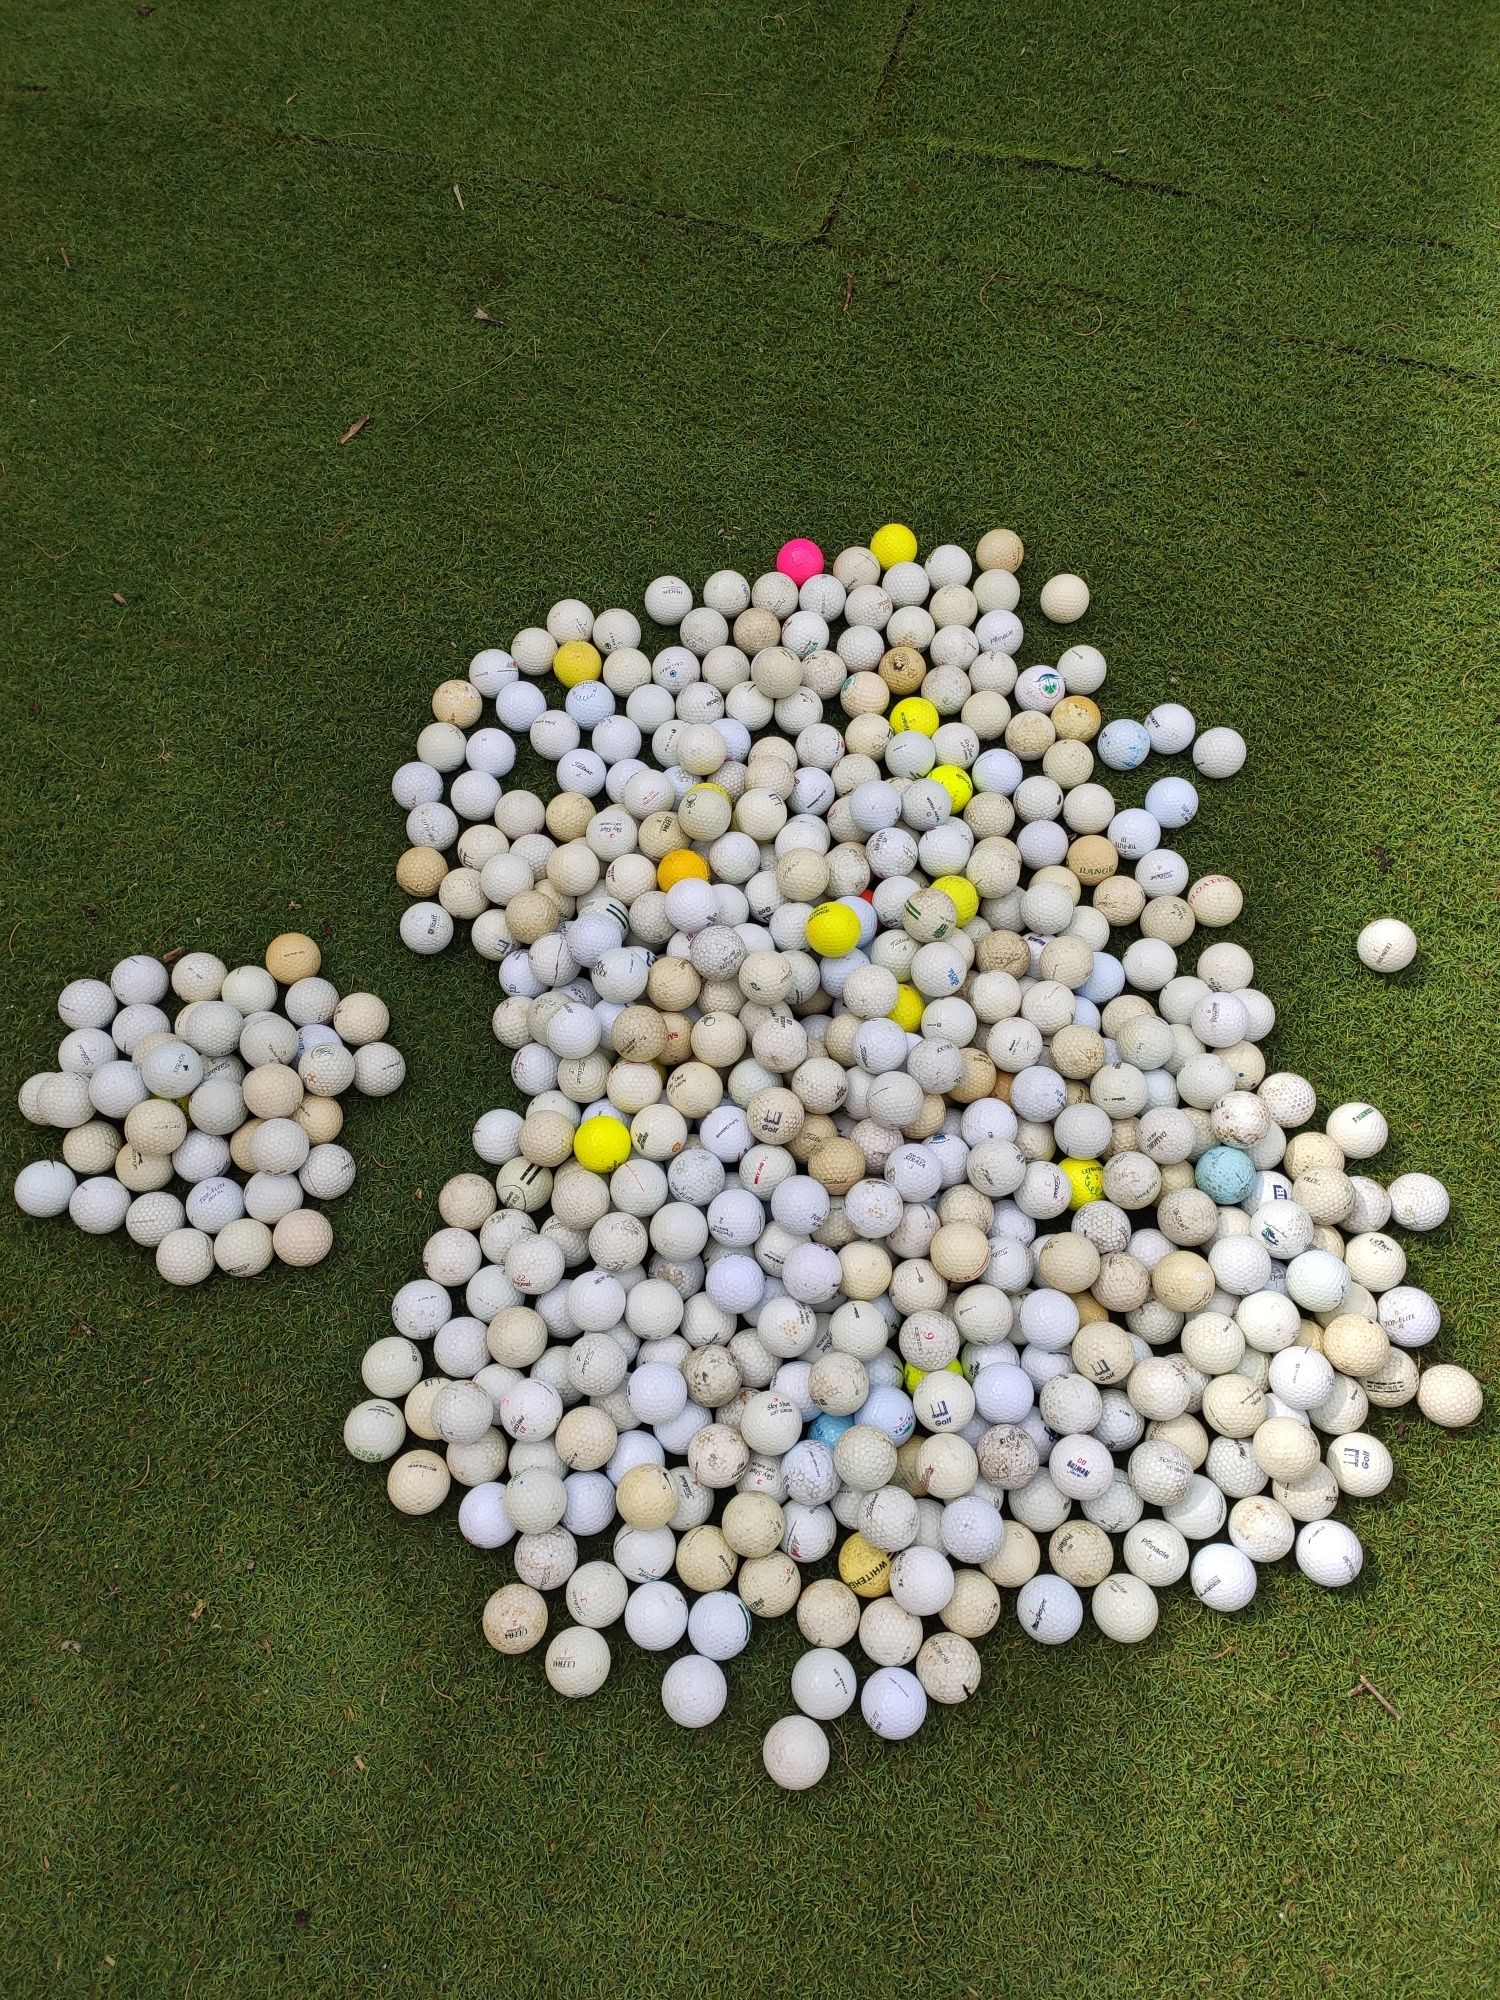 421 Bolas de golf usadas